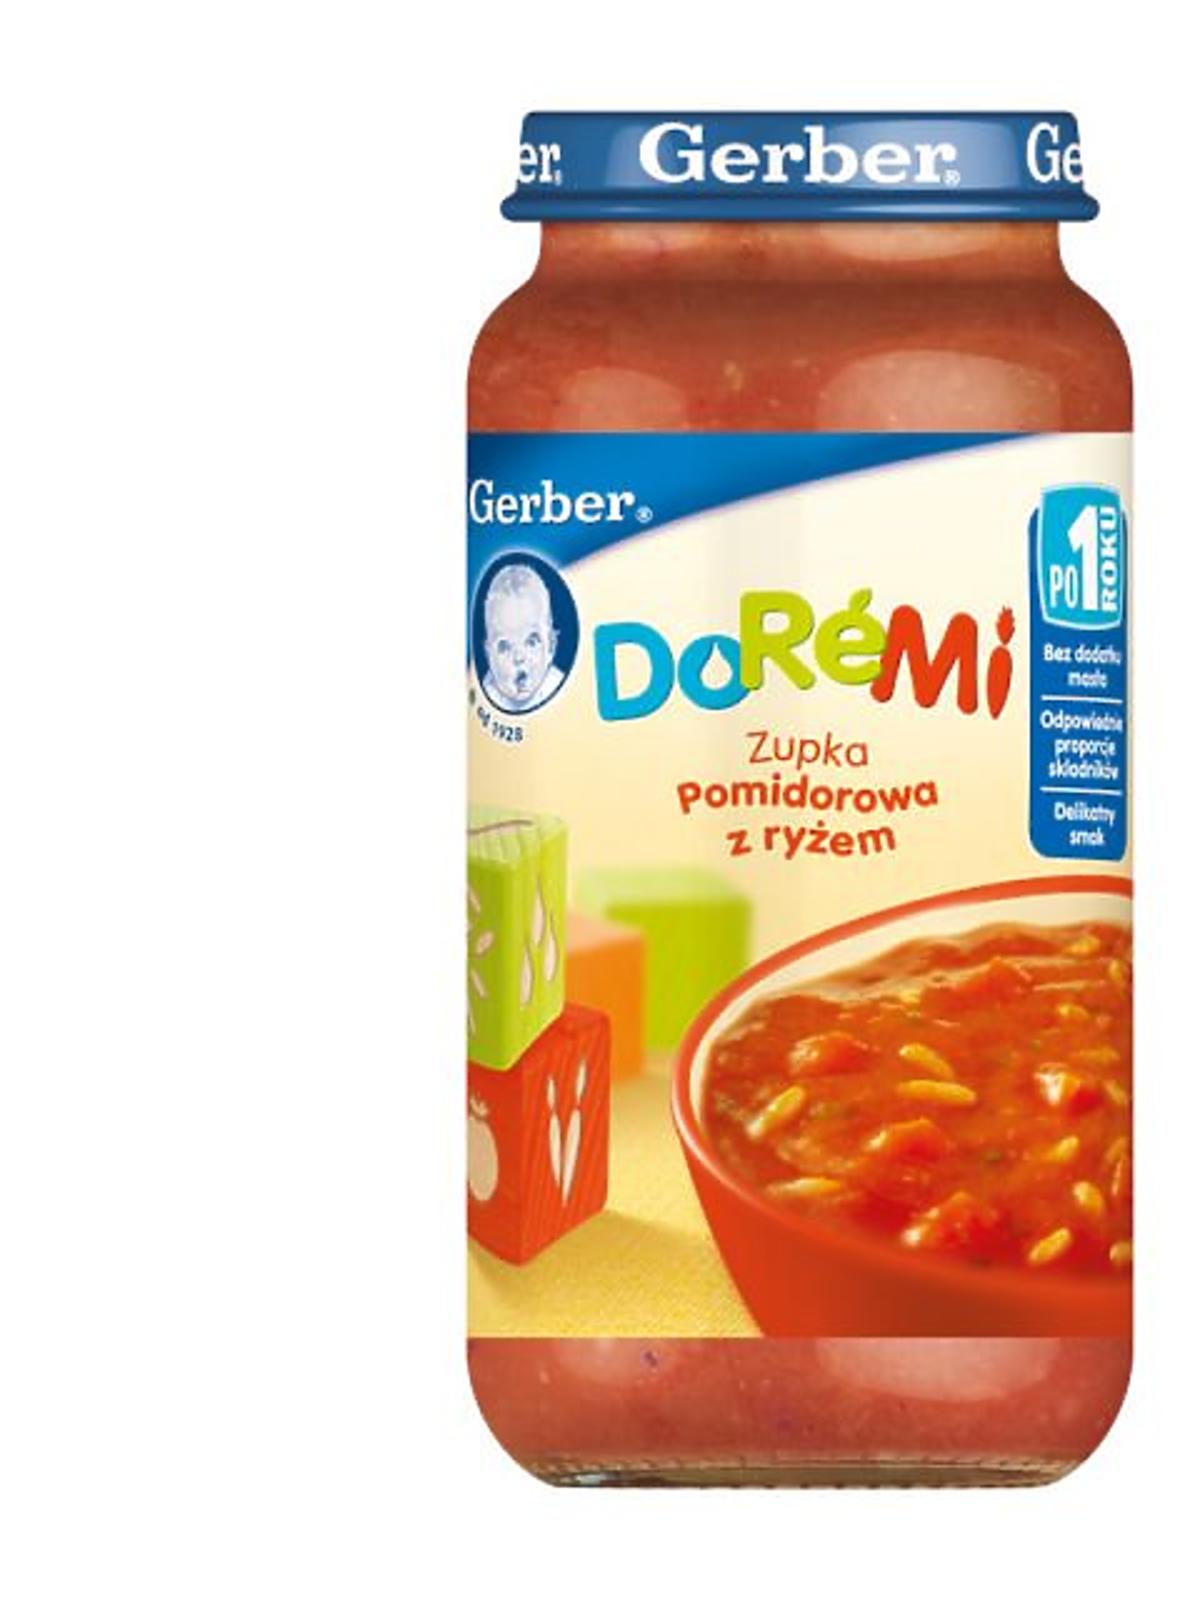 DoReMi-Zupka-pomidorowa-z-ryżem-250g.jpg